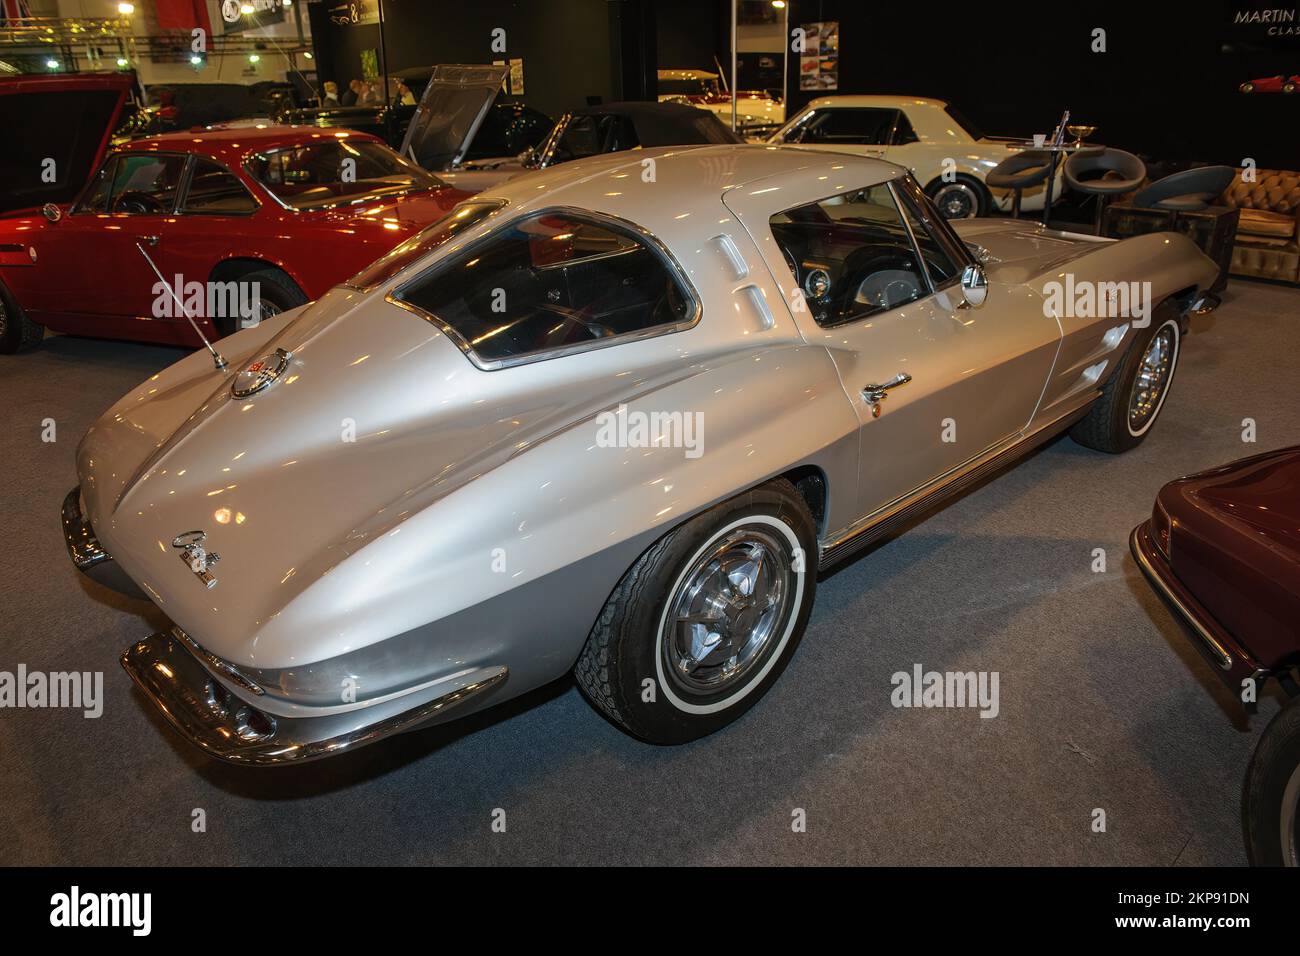 Voiture de sport historique voiture classique Chevrolet Corvette C2 Stingray avec fenêtre divisée lunette arrière à partir de l'année 1962 1963, salon Techno Classica, Essen, N Banque D'Images